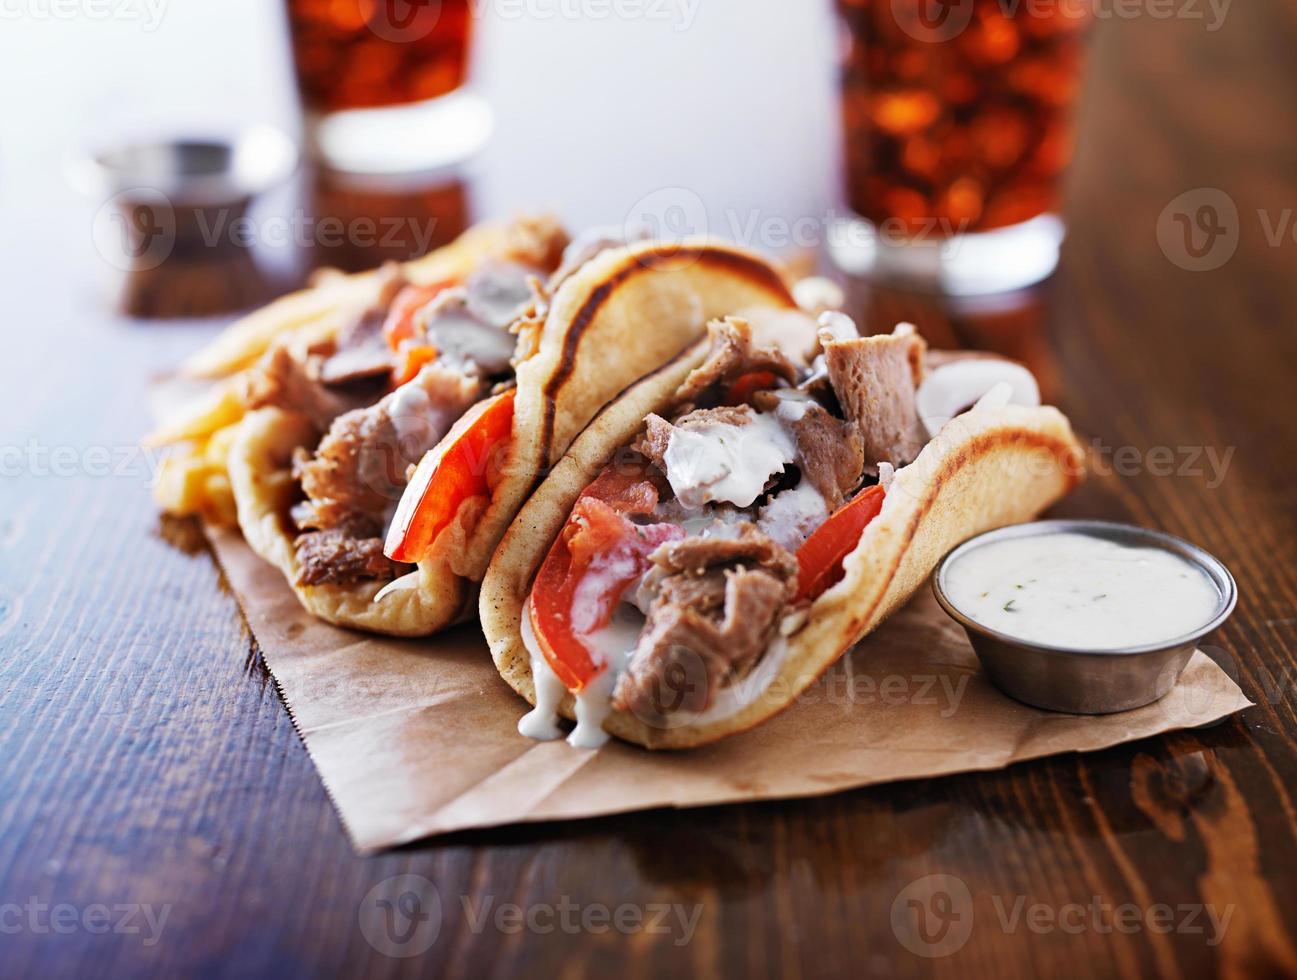 grekiska gyros med tzatzikiisås och pommes frites foto